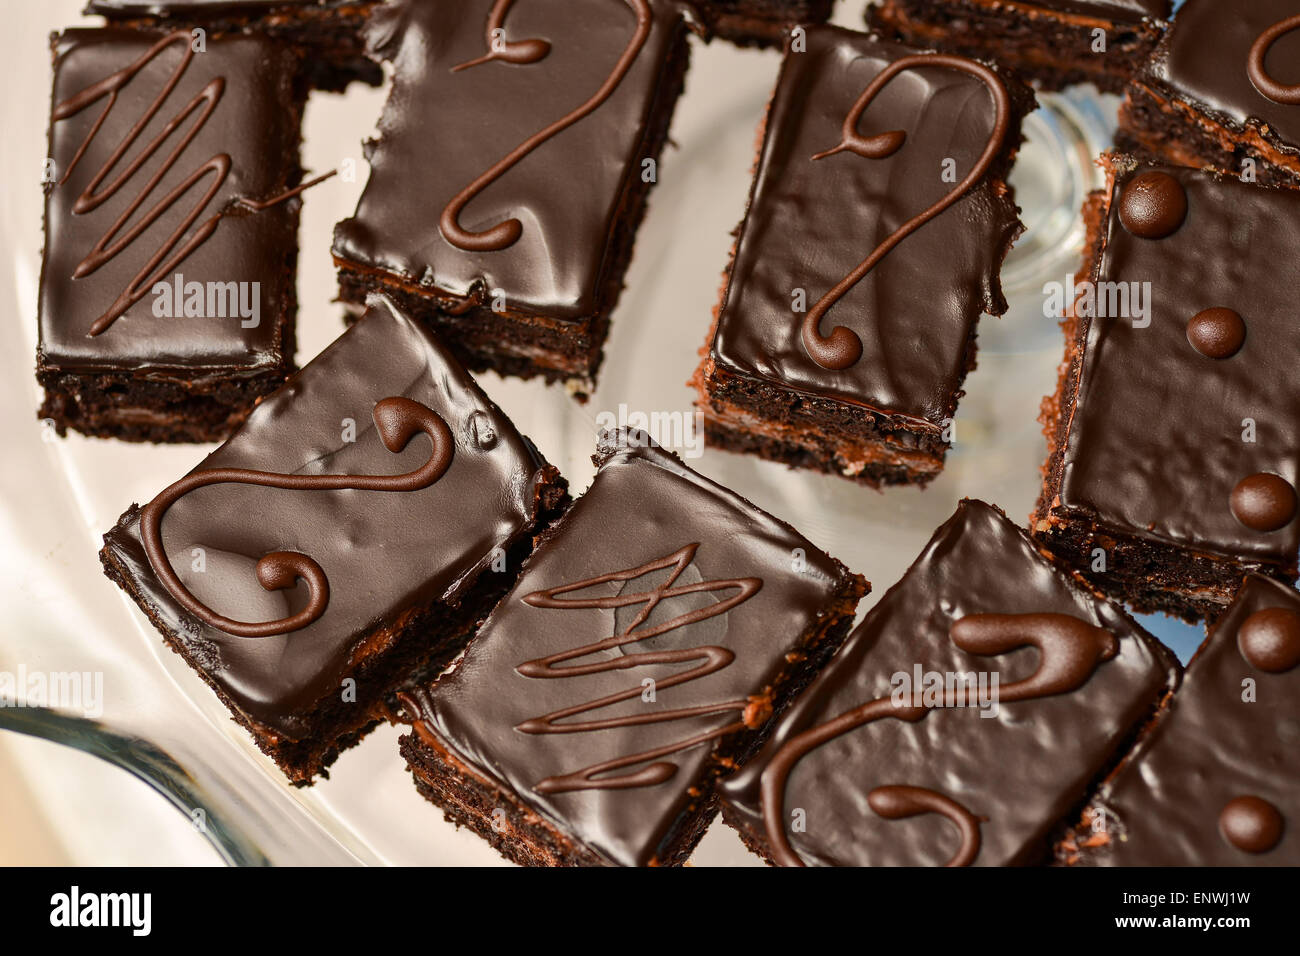 Pasteles con cobertura de chocolate Foto de stock